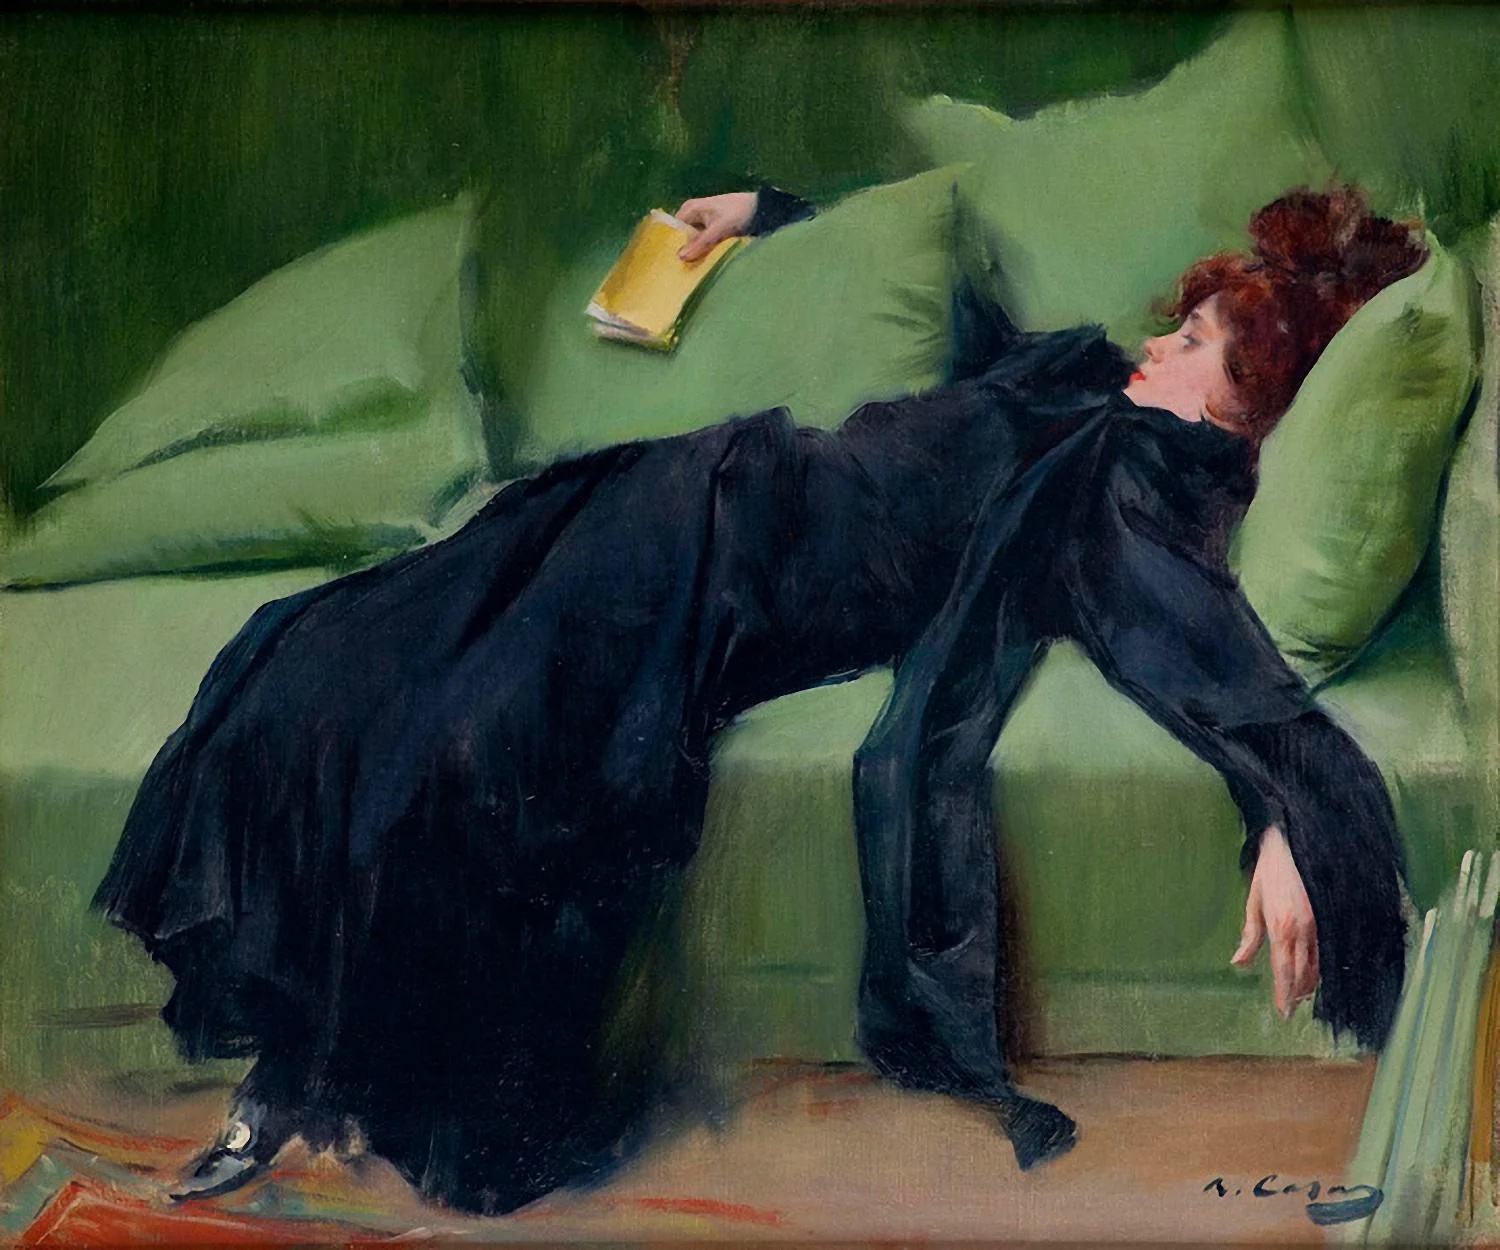 Ramon Casas, A Decadent Girl, 1899